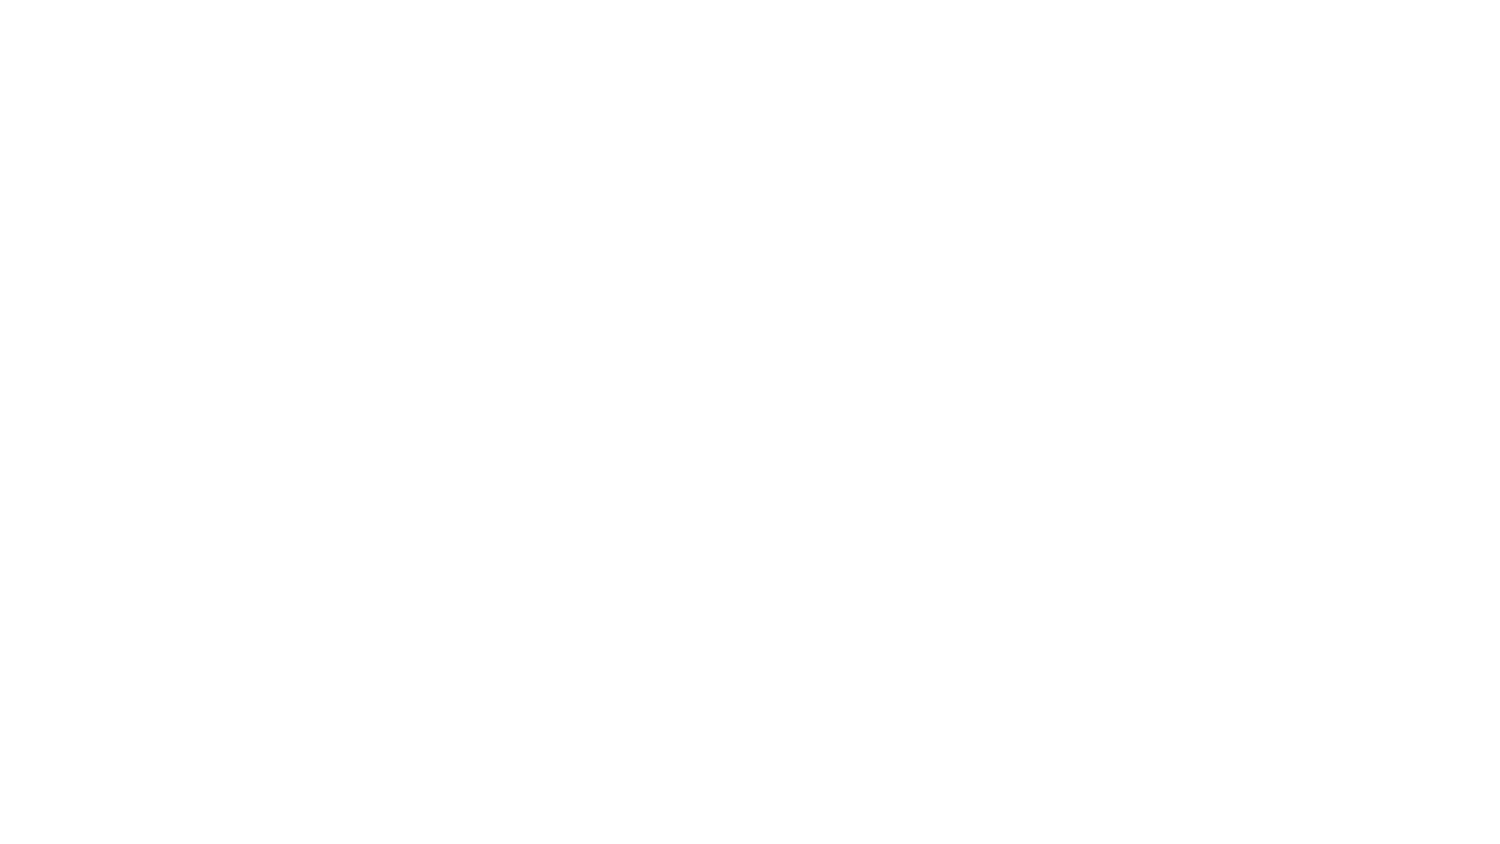 Bible Reading Plan